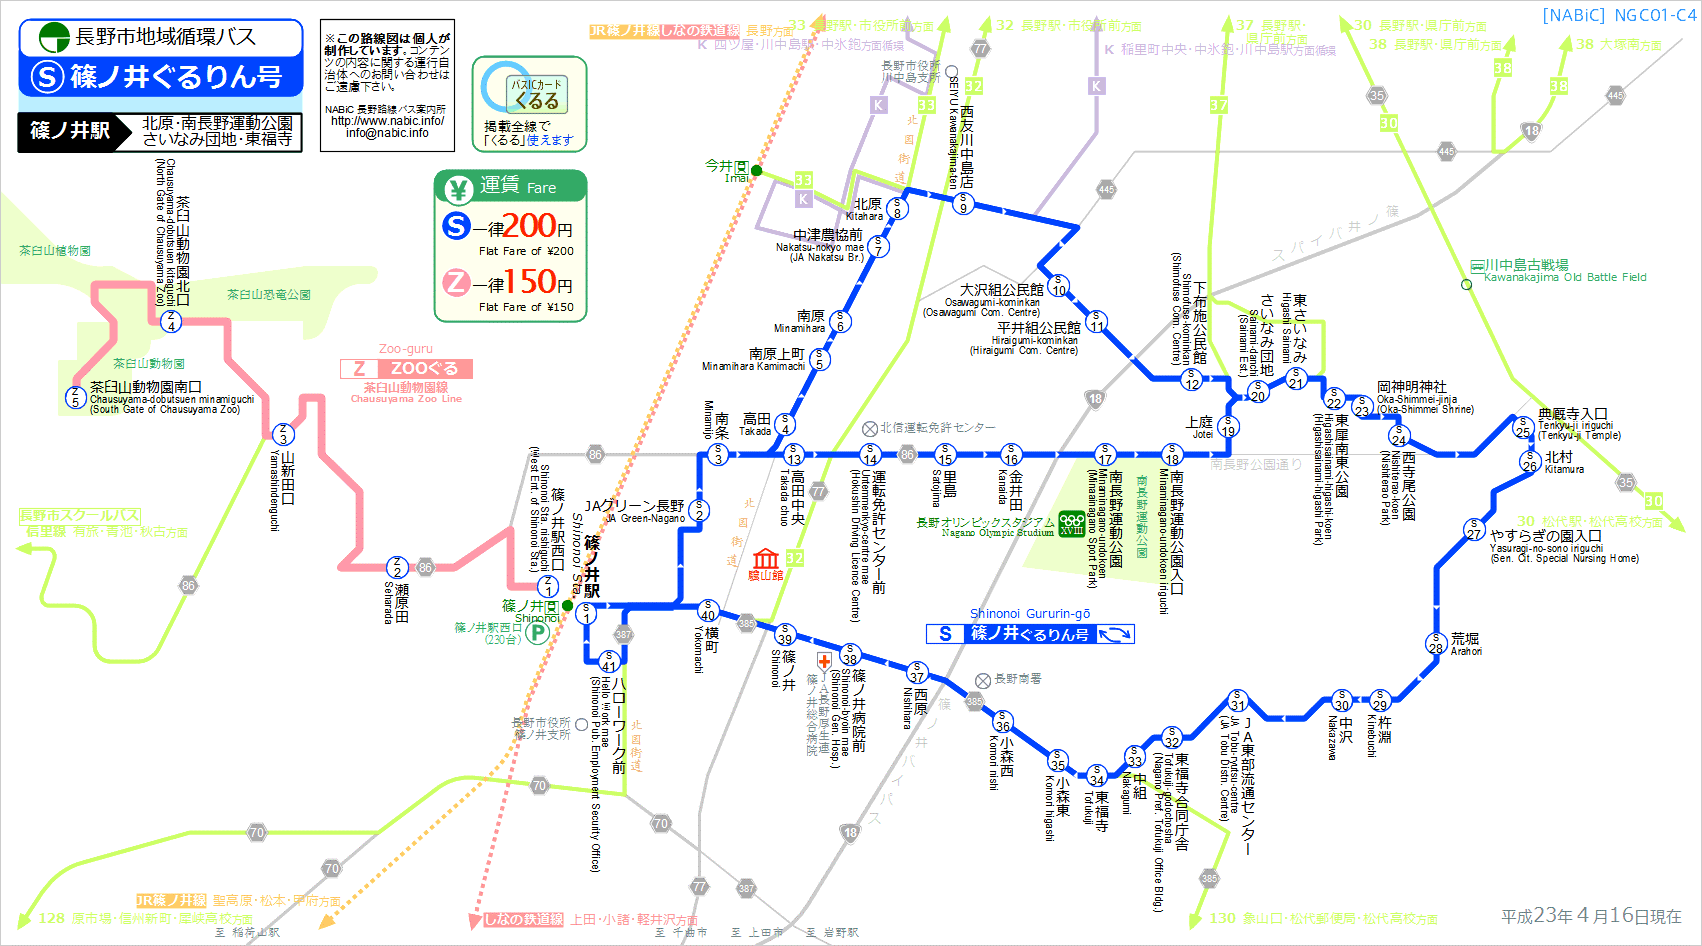 路線図[NGC01-C4]